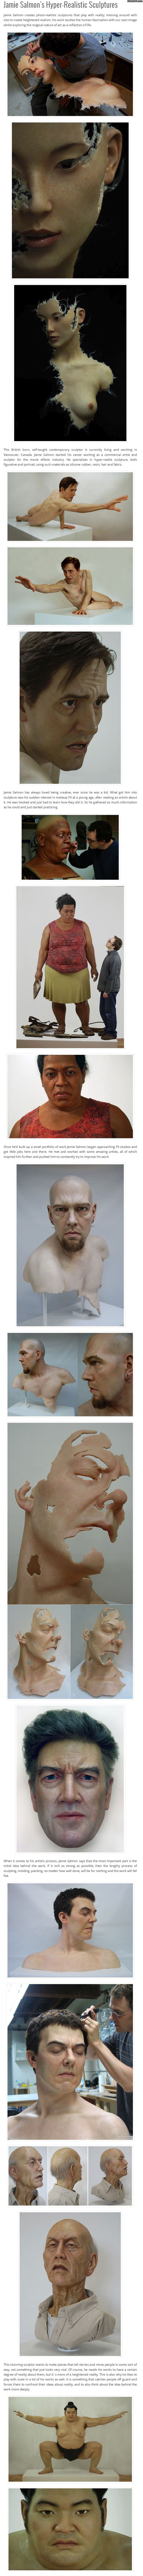 jamie_salmons_hyper_realistic_sculptures.jpg